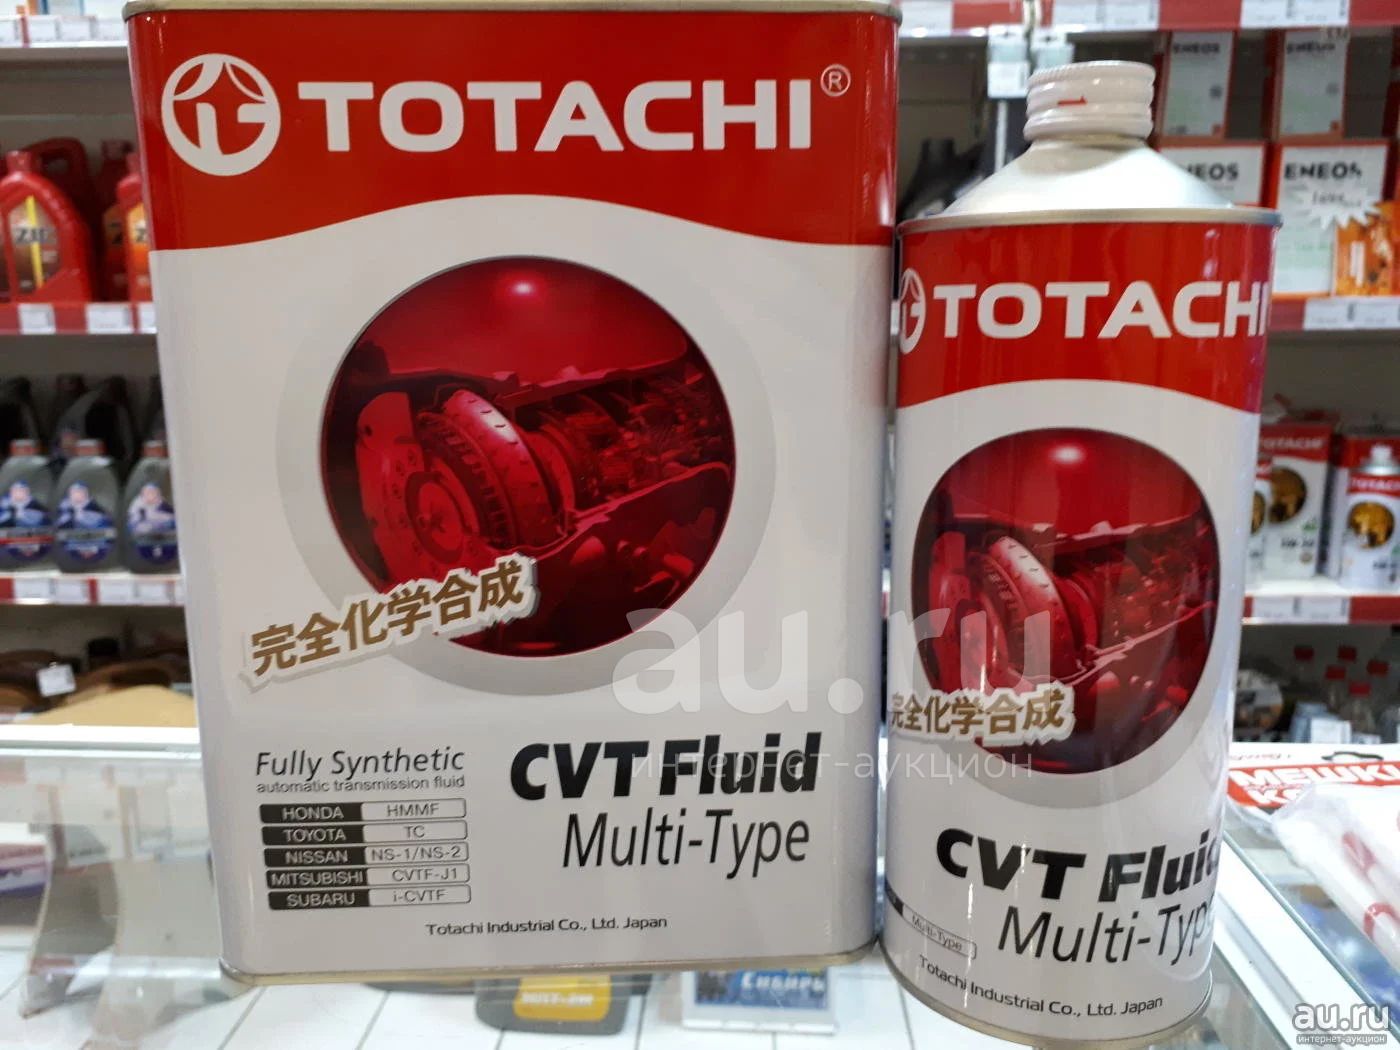 Totachi atf multi. TOTACHI ATF CVT Multi-Type 1л. TOTACHI ns2 артикул. TOTACHI CVTF Multi-Type 1л. TOTACHI CVTF Multi-Type 60л.